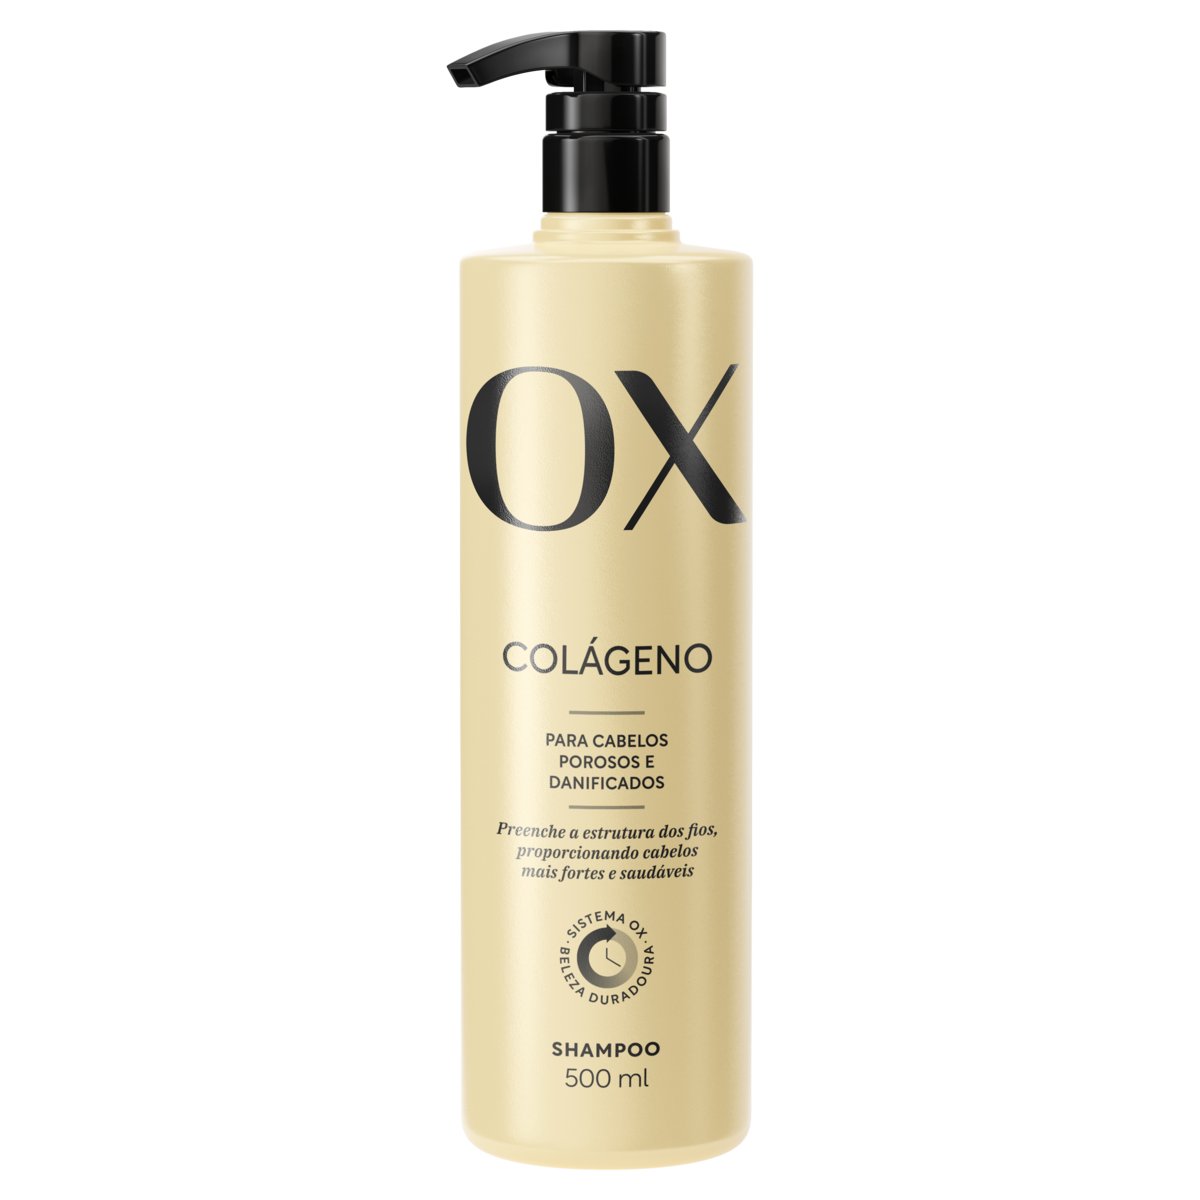 Shampoo OX Colágeno com 500ml